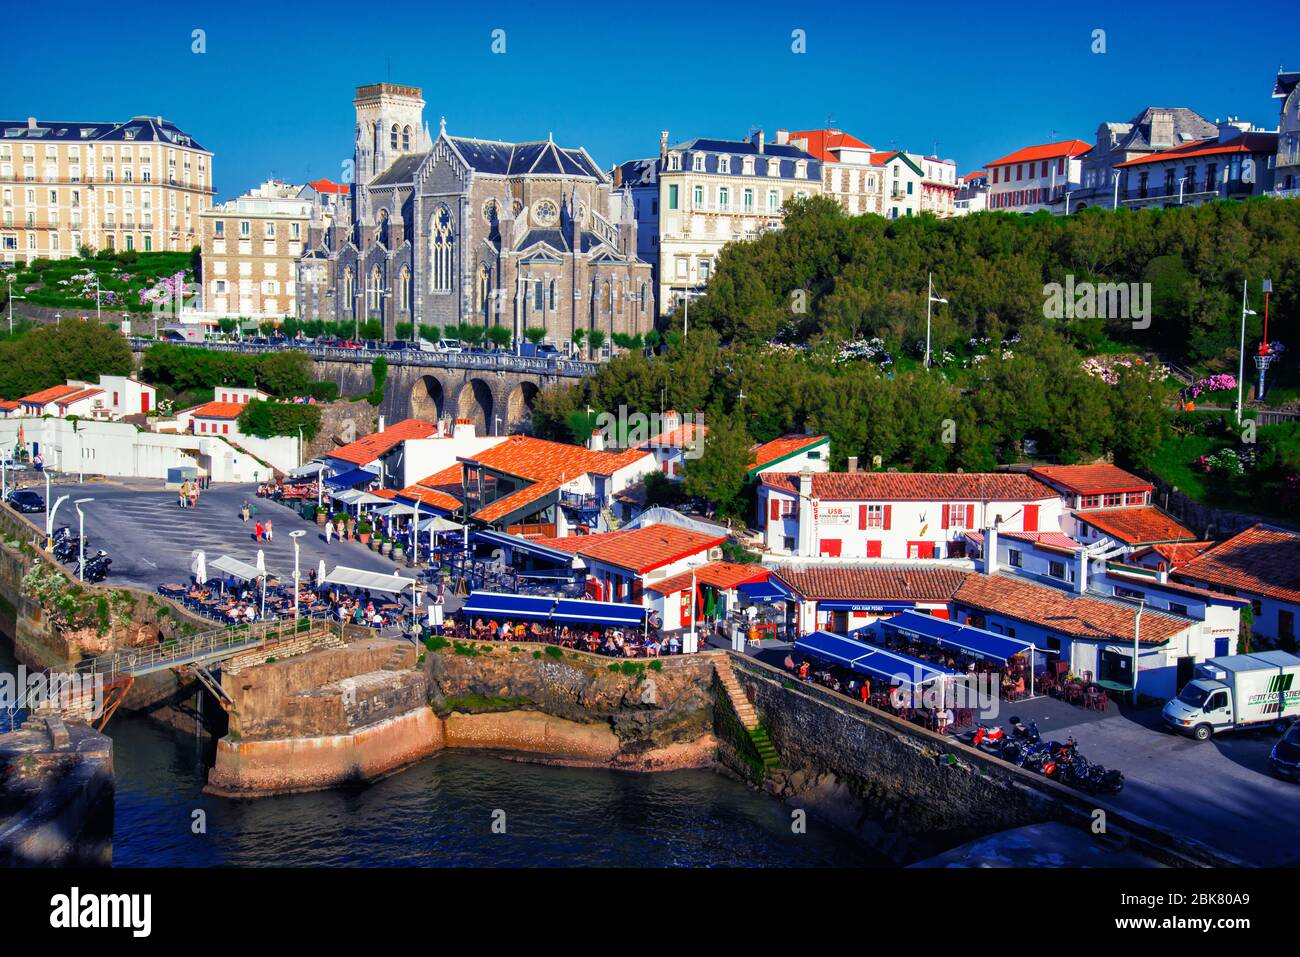 Port de Pecheurs, Biarritz, France Stock Photo